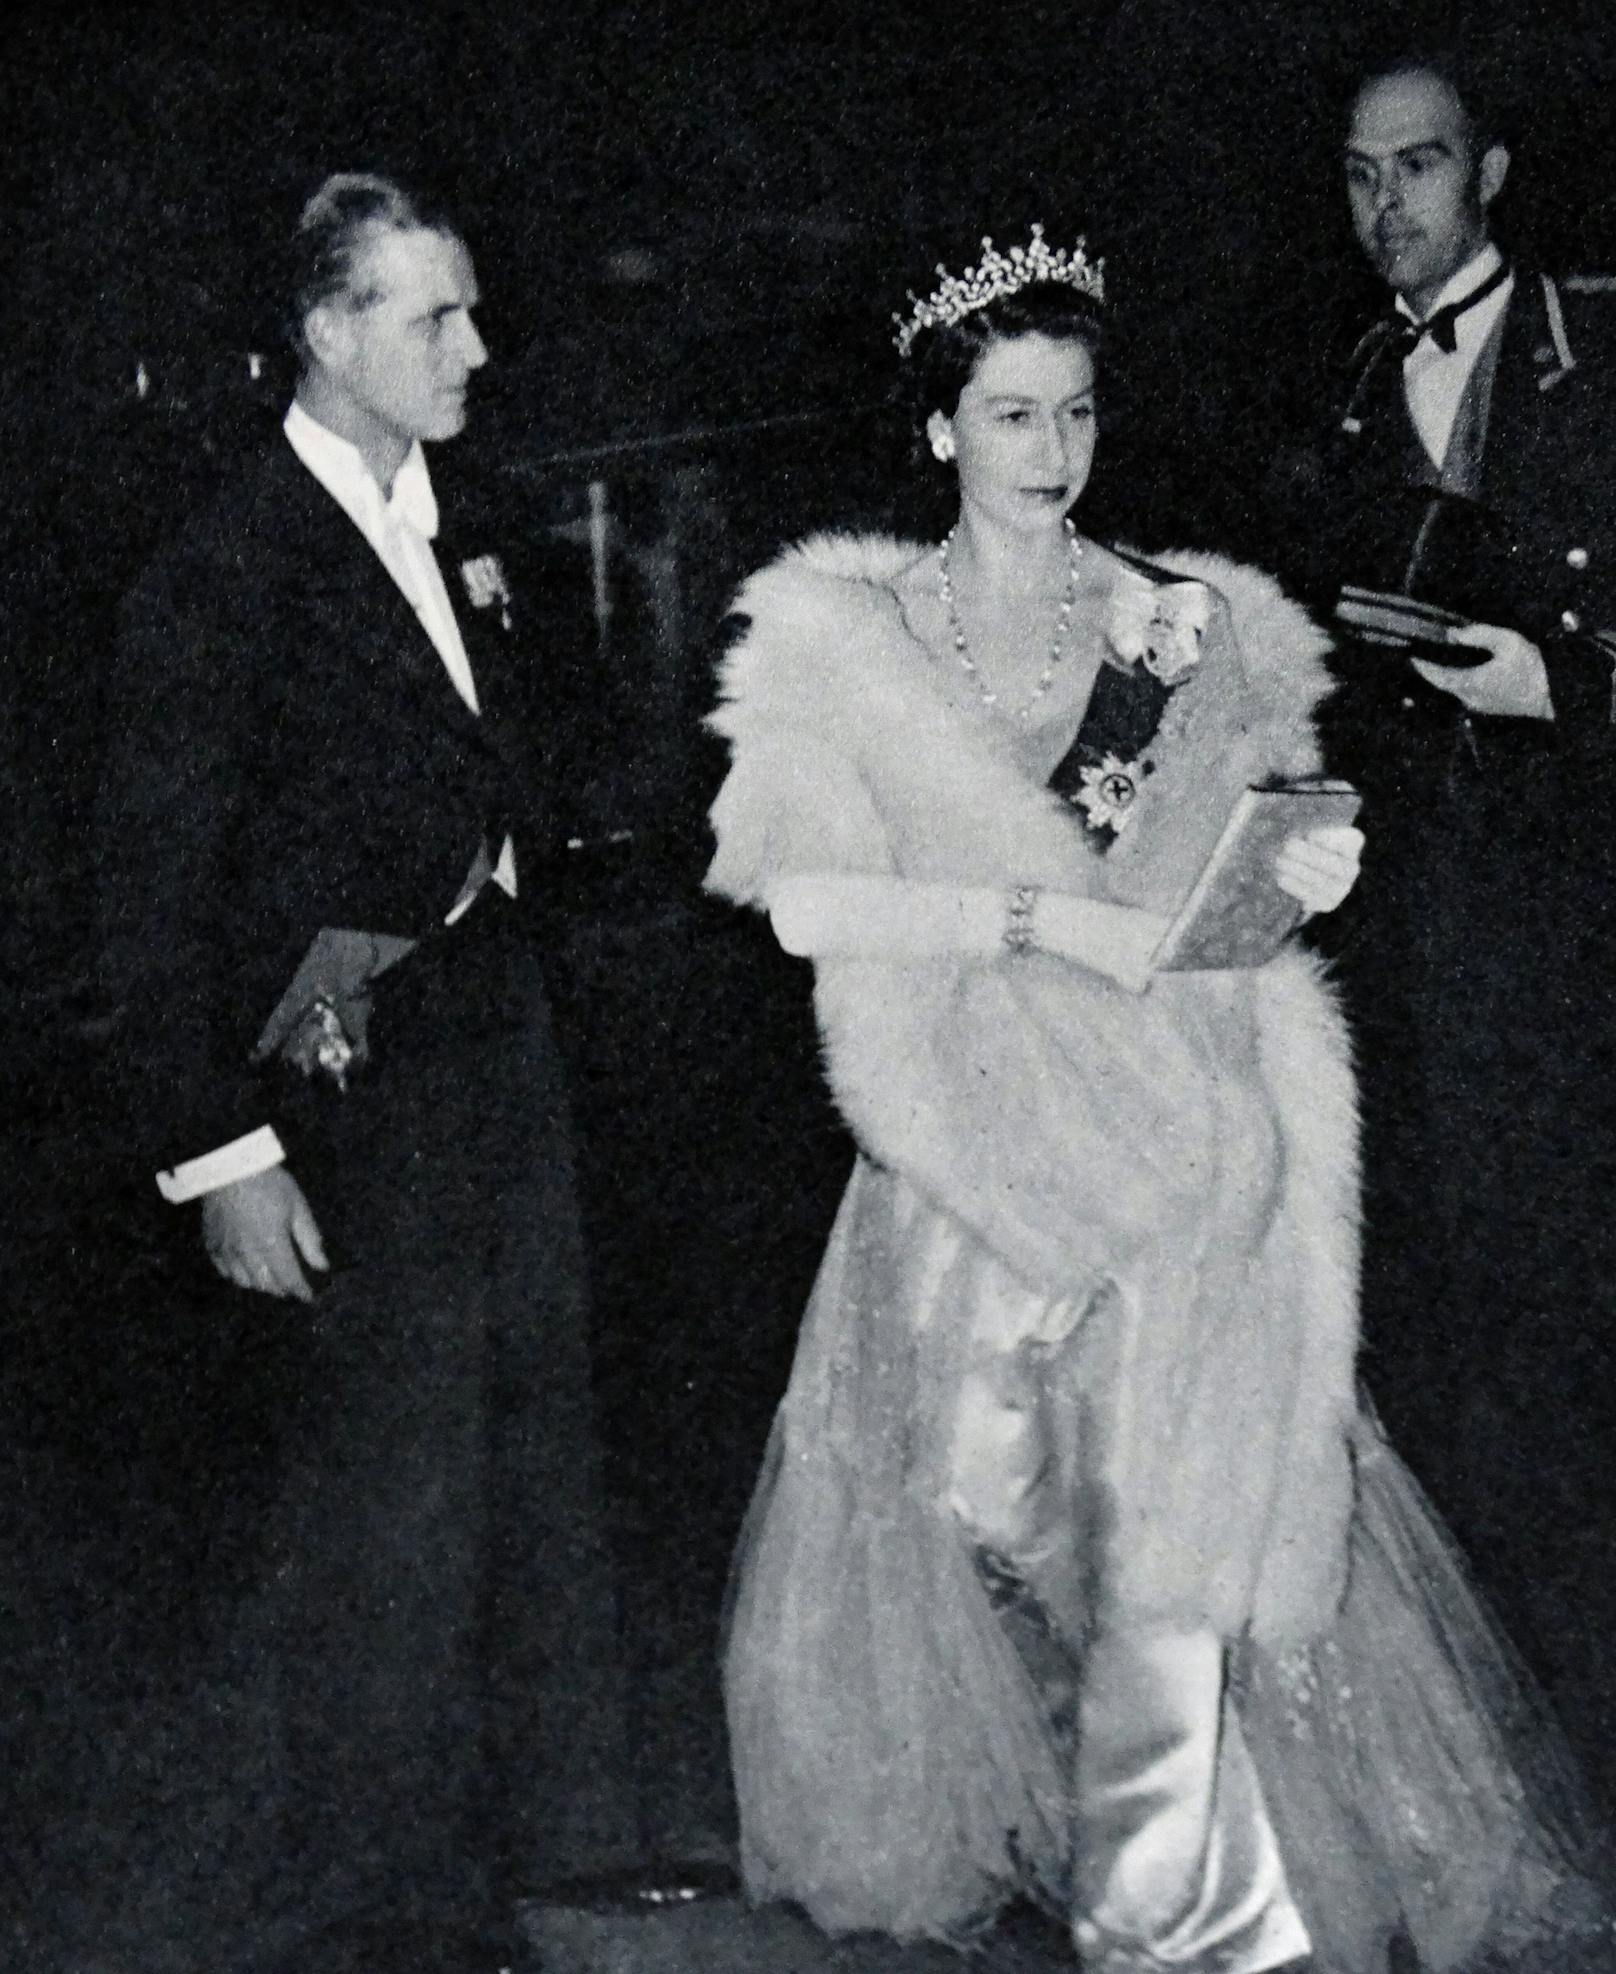 Princess Elizabeth bevor sie Königin wurde. Mit Pelzstola, opulentem Kleid und Tiara.